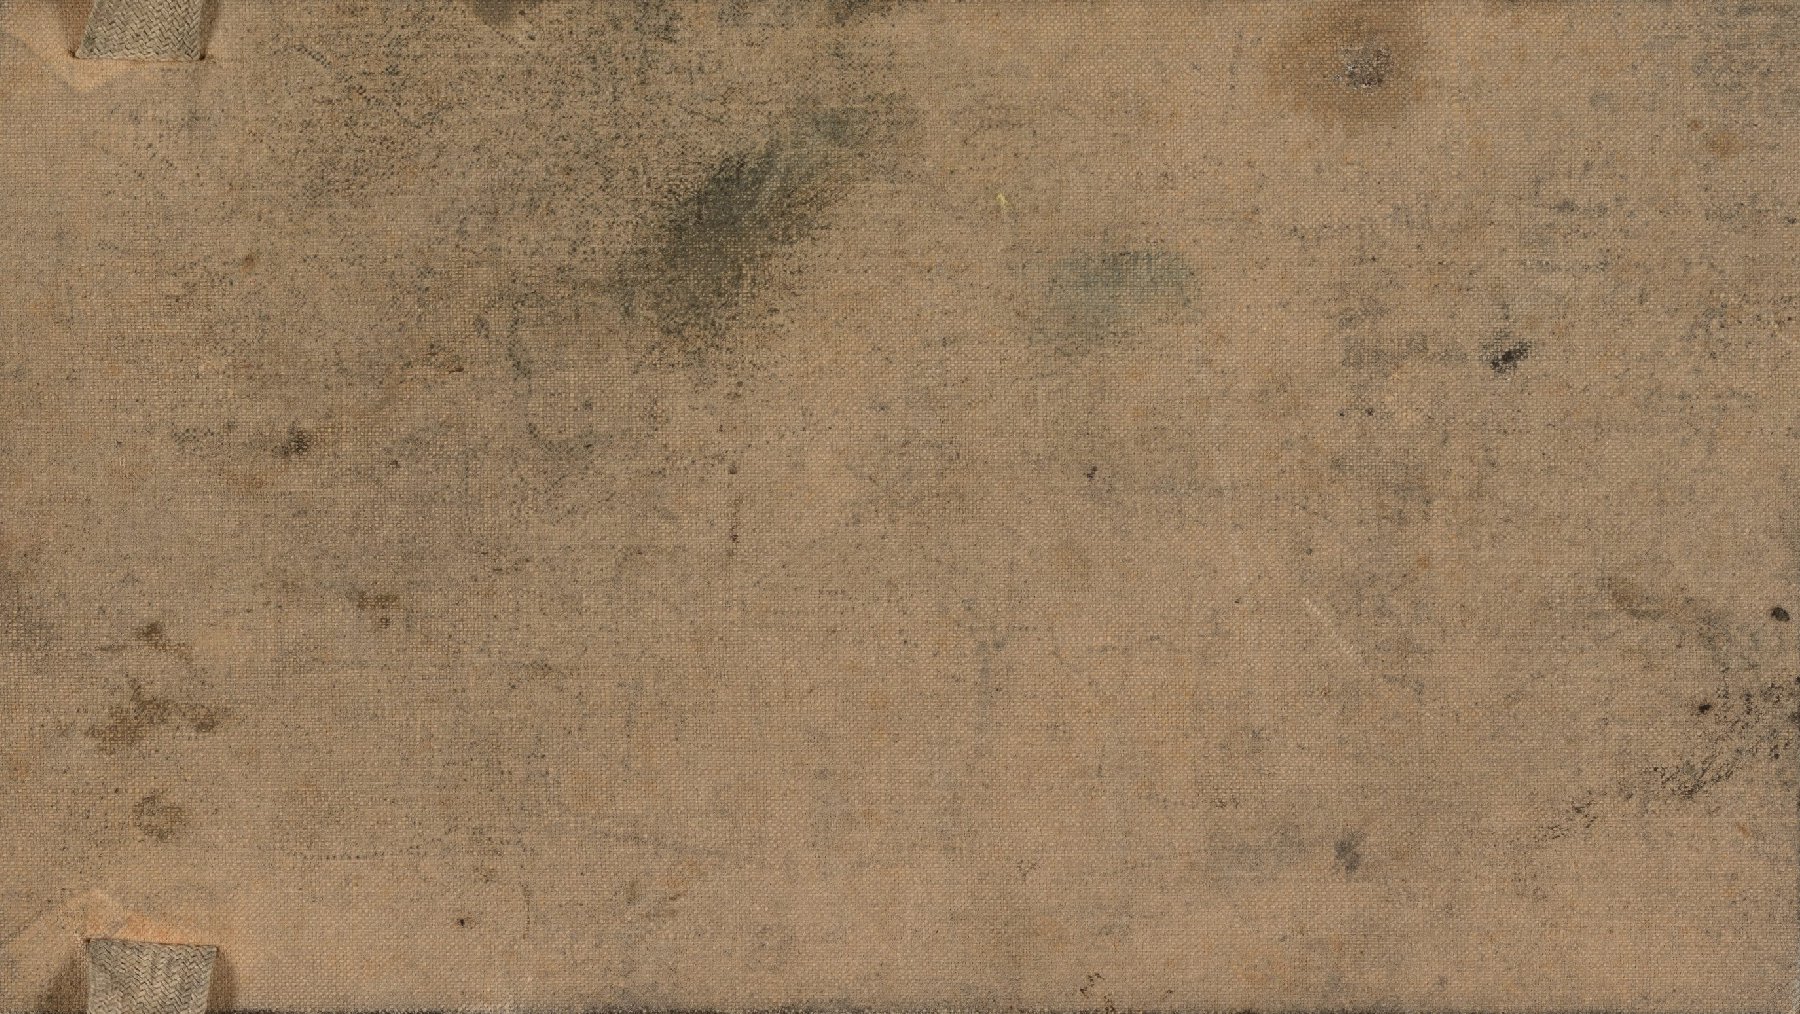 Omslag (achterzijde) Vincent van Gogh (1853 - 1890), Parijs, februari-juni 1886